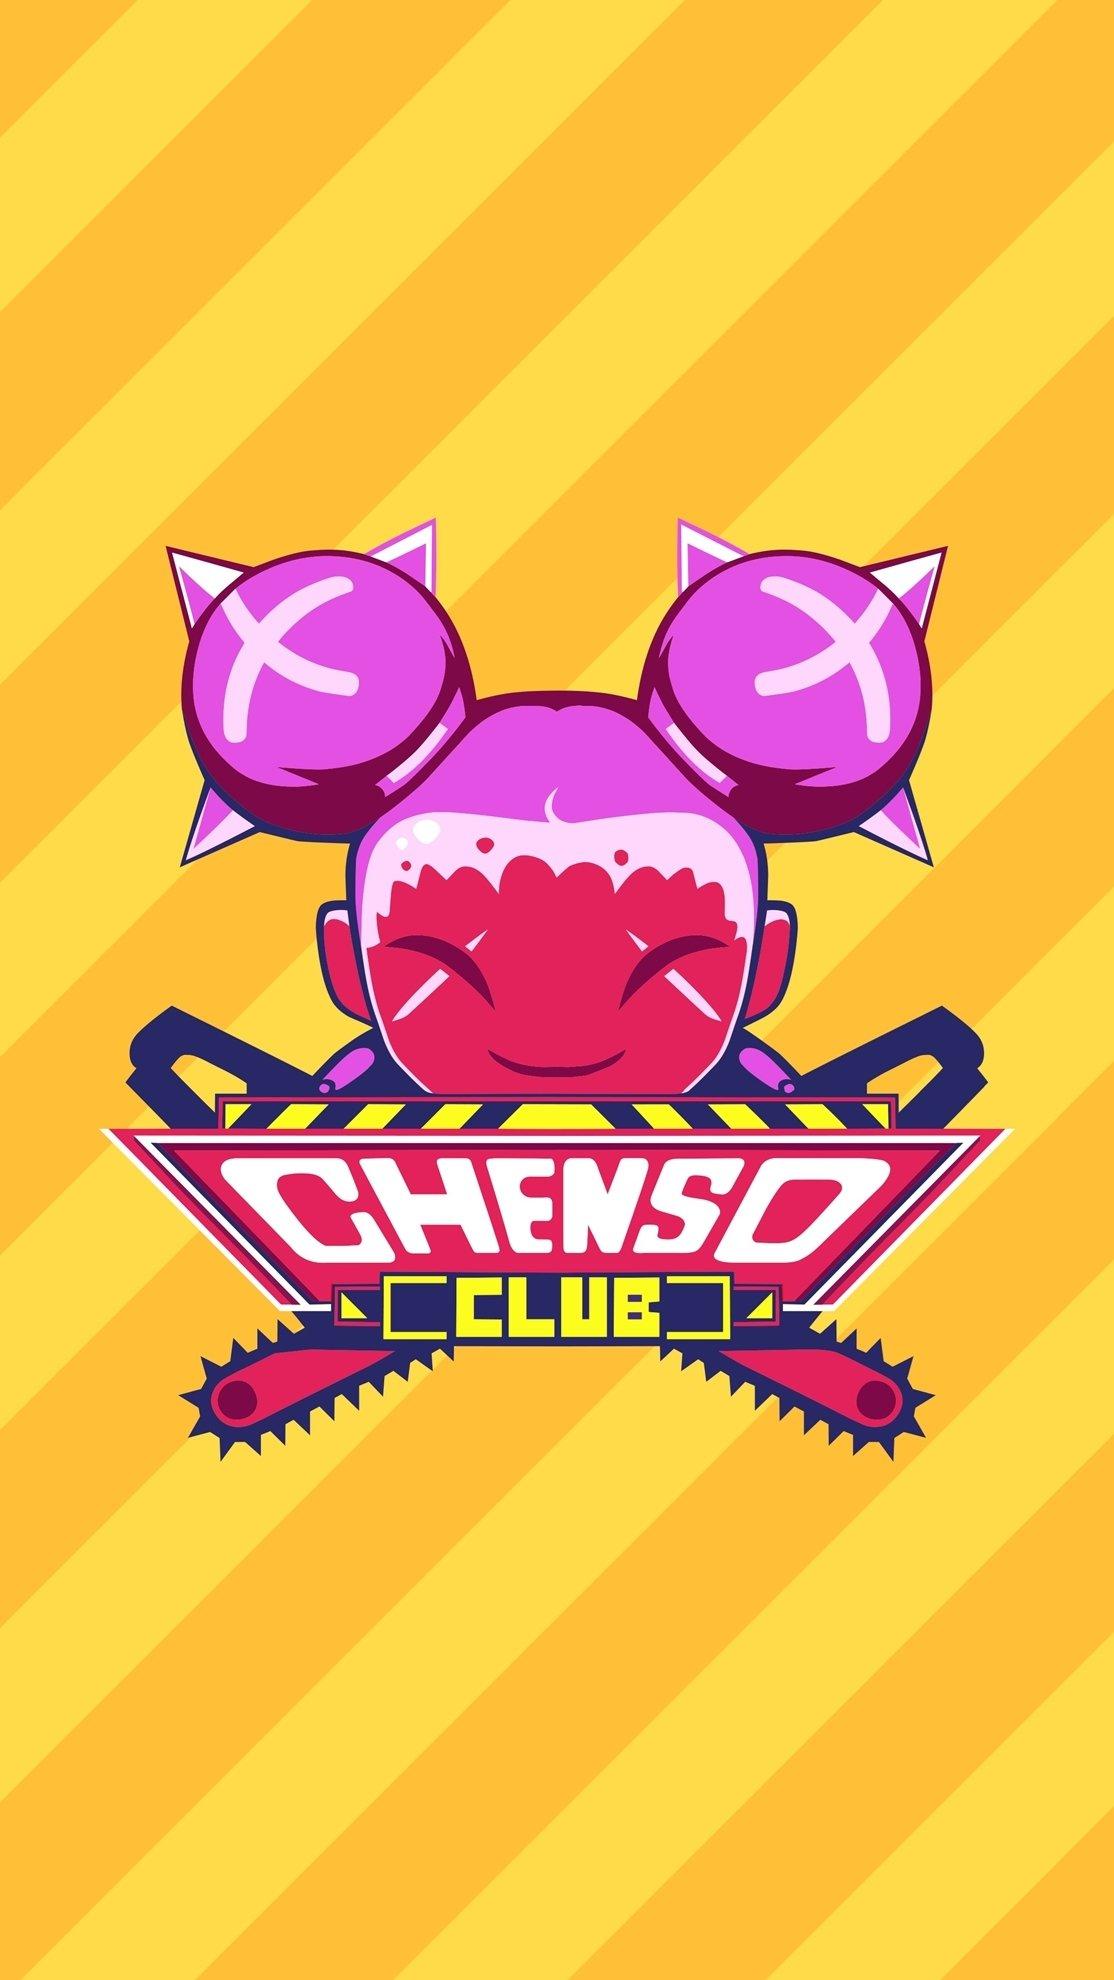 Chenso Club | OCE (3e30cd08-2ff9-4d49-9d08-ec24ee9a1093)